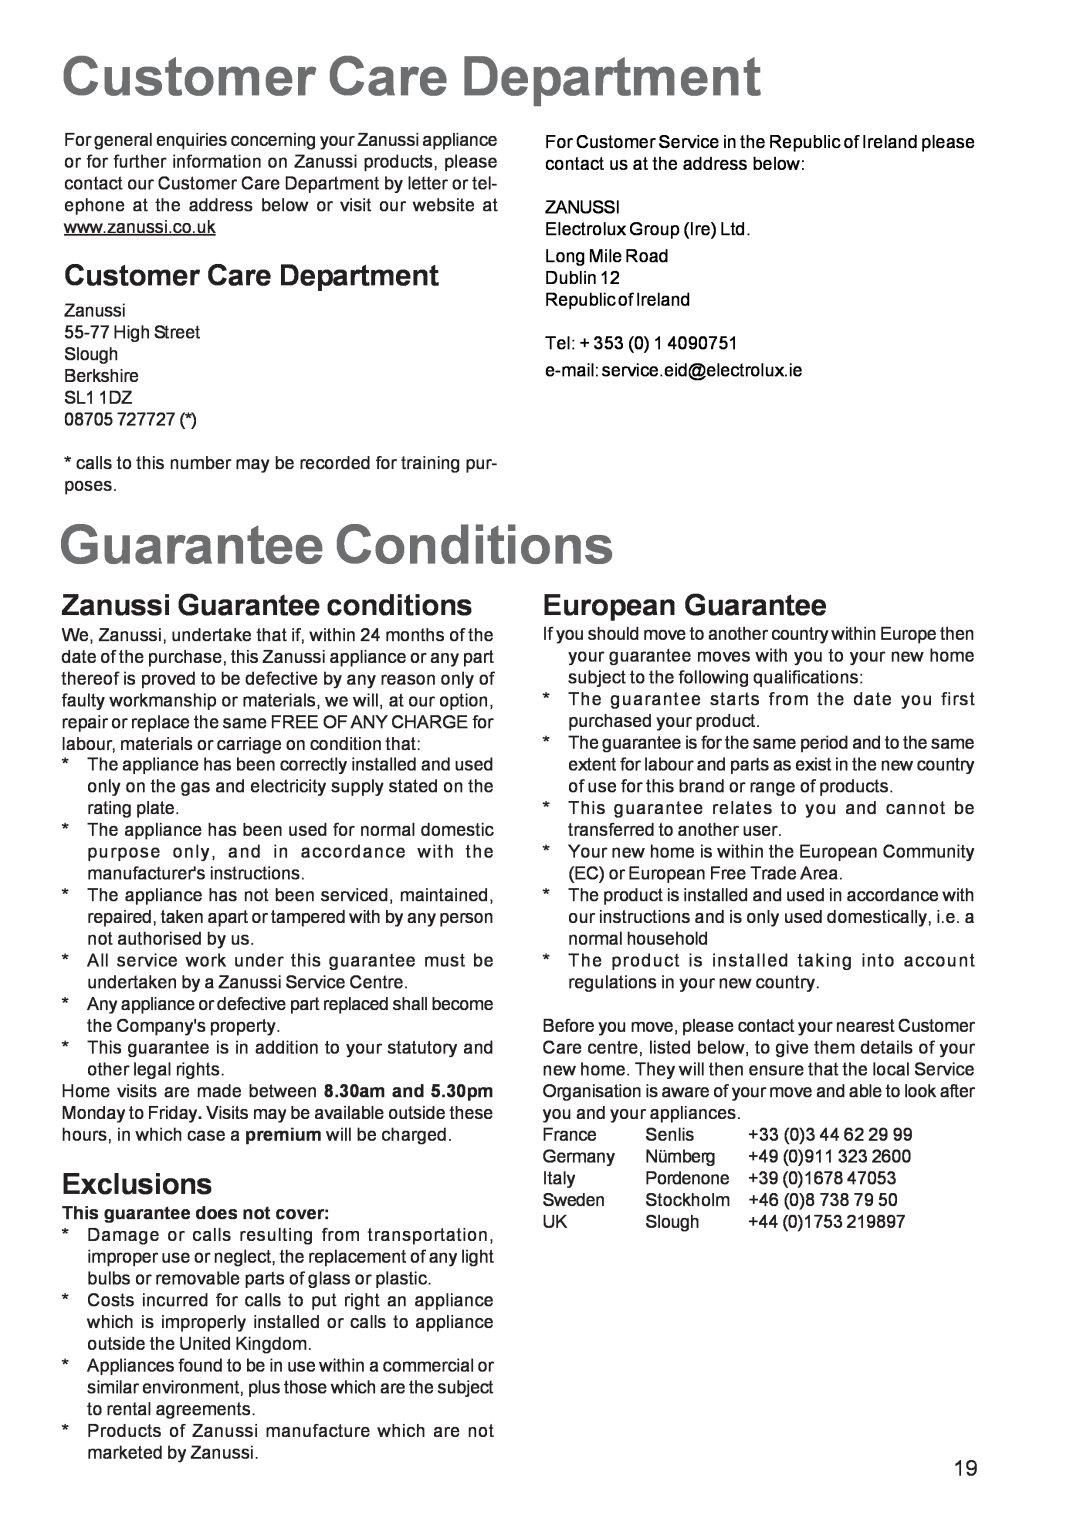 Zanussi ZBS 663 manual Customer Care Department, Guarantee Conditions, Zanussi Guarantee conditions, Exclusions 